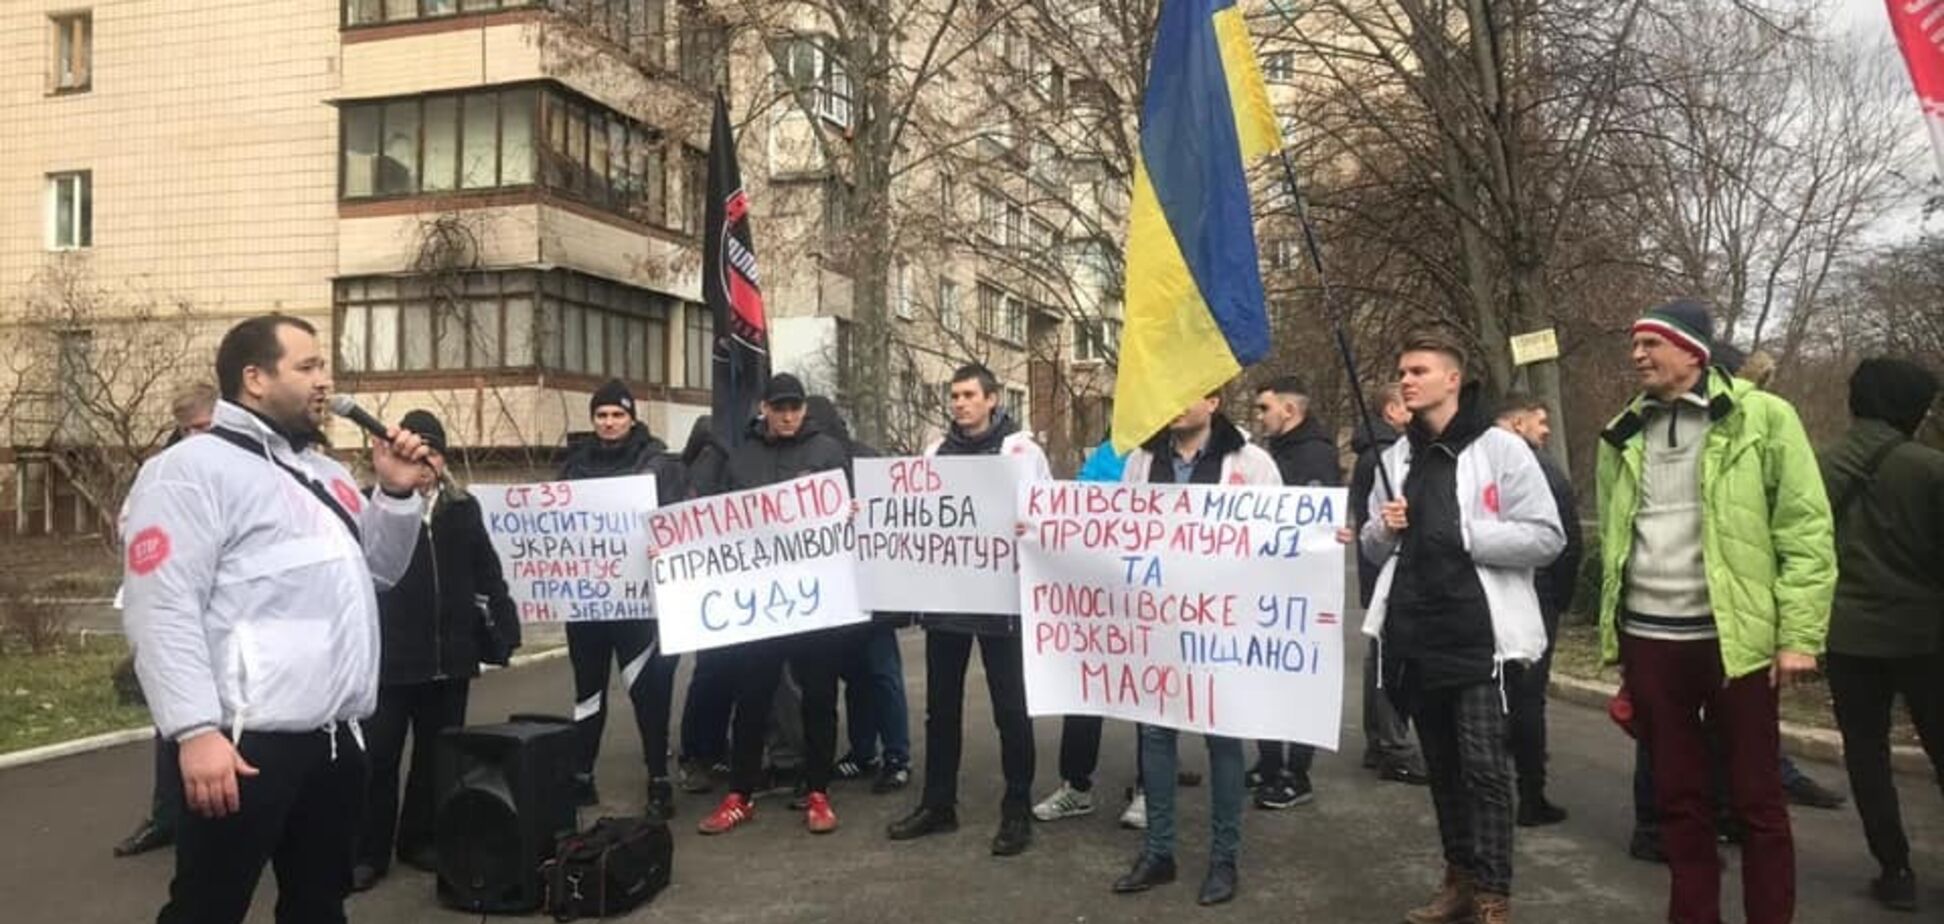 'Шиють' справи за боротьбу з піщаною мафією!' У Києві пройшов мітинг проти свавілля прокурорів